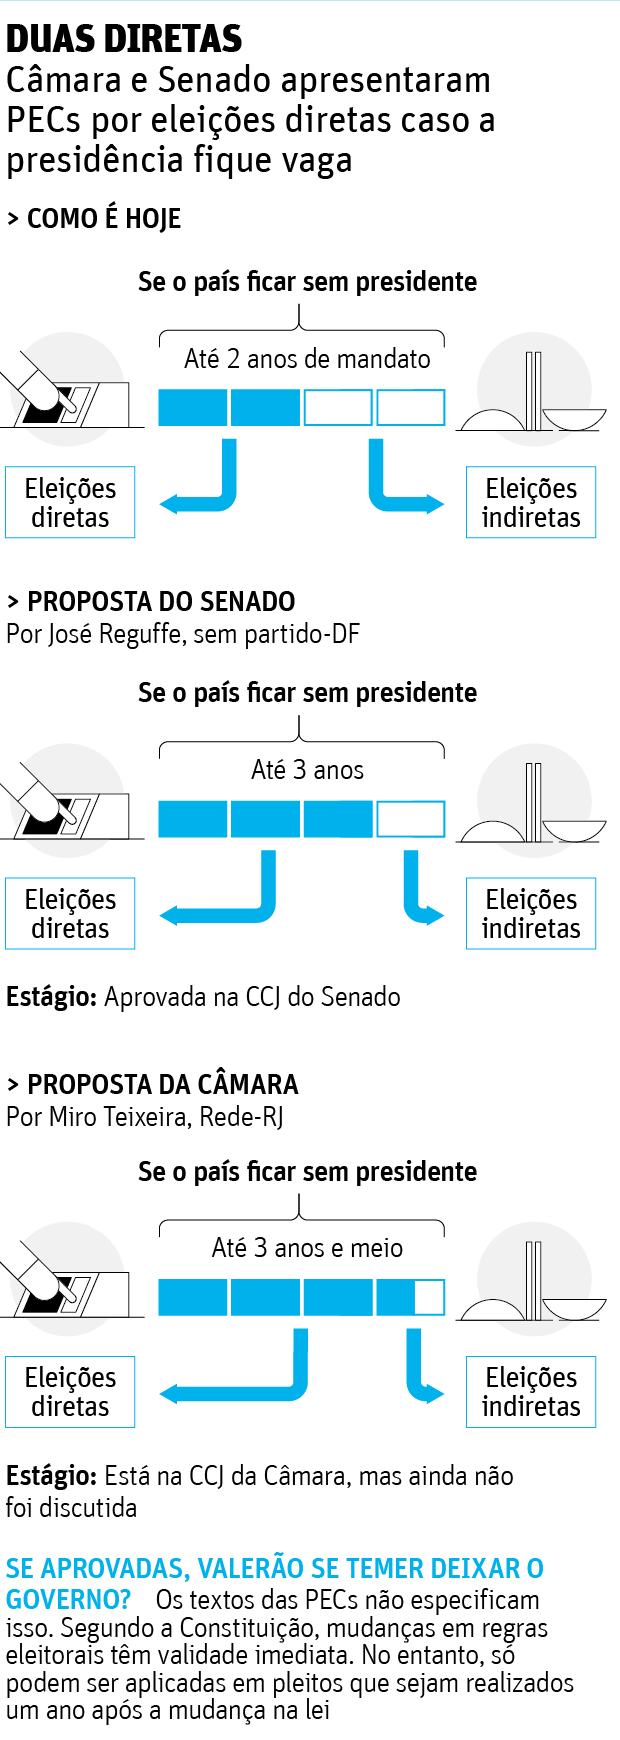 Duas diretasCmara e Senado apresentaram PECs por eleies diretas caso a presidncia fique vaga